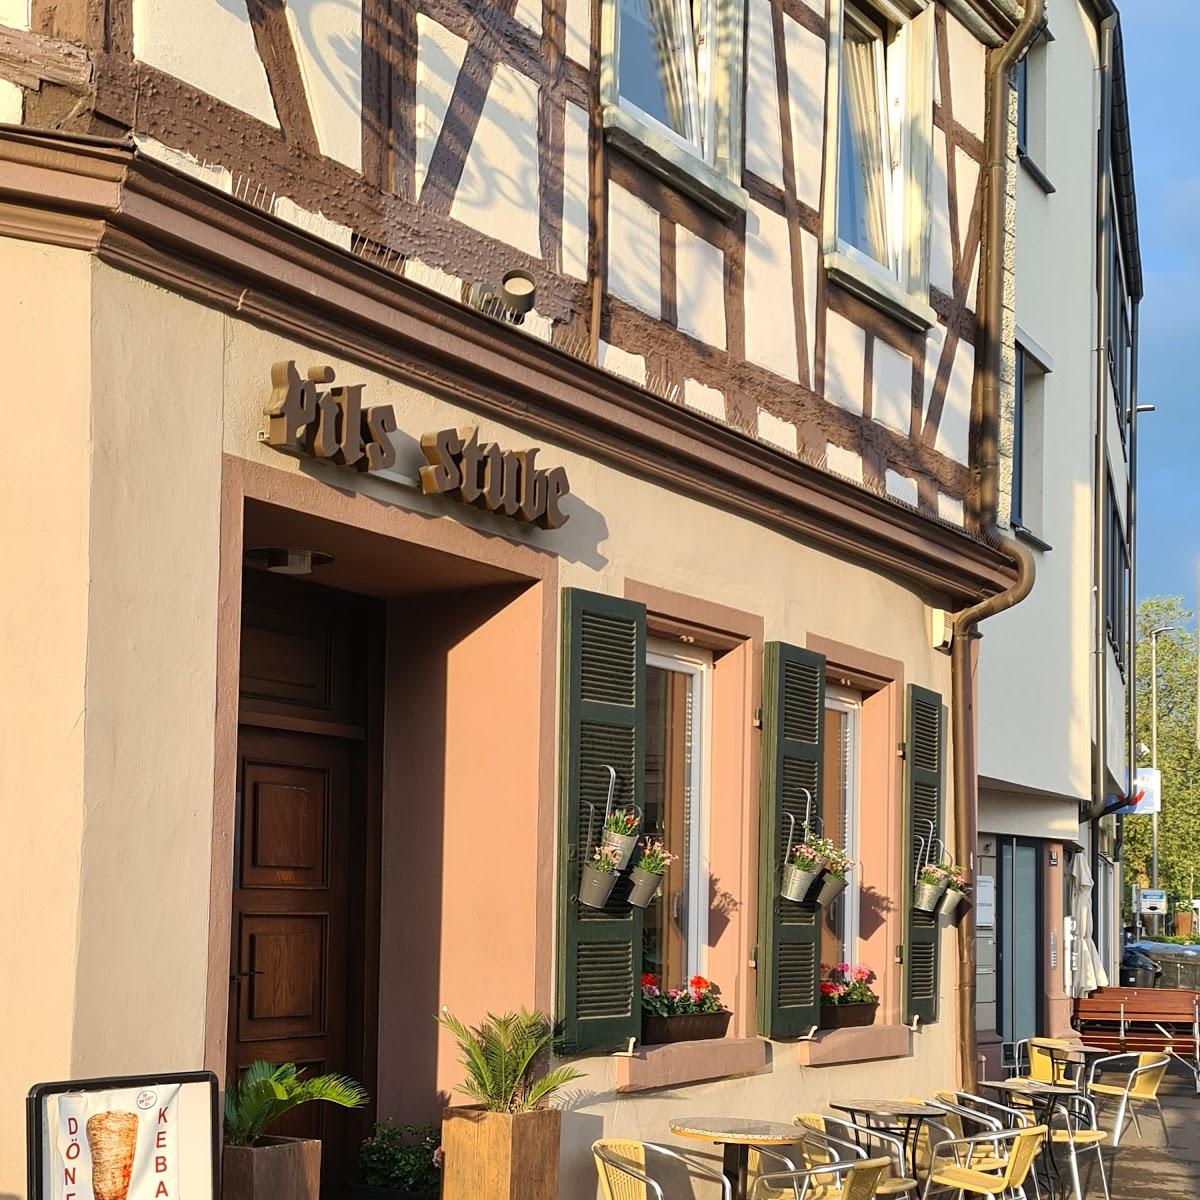 Restaurant "Pils-Stube" in  Schorndorf